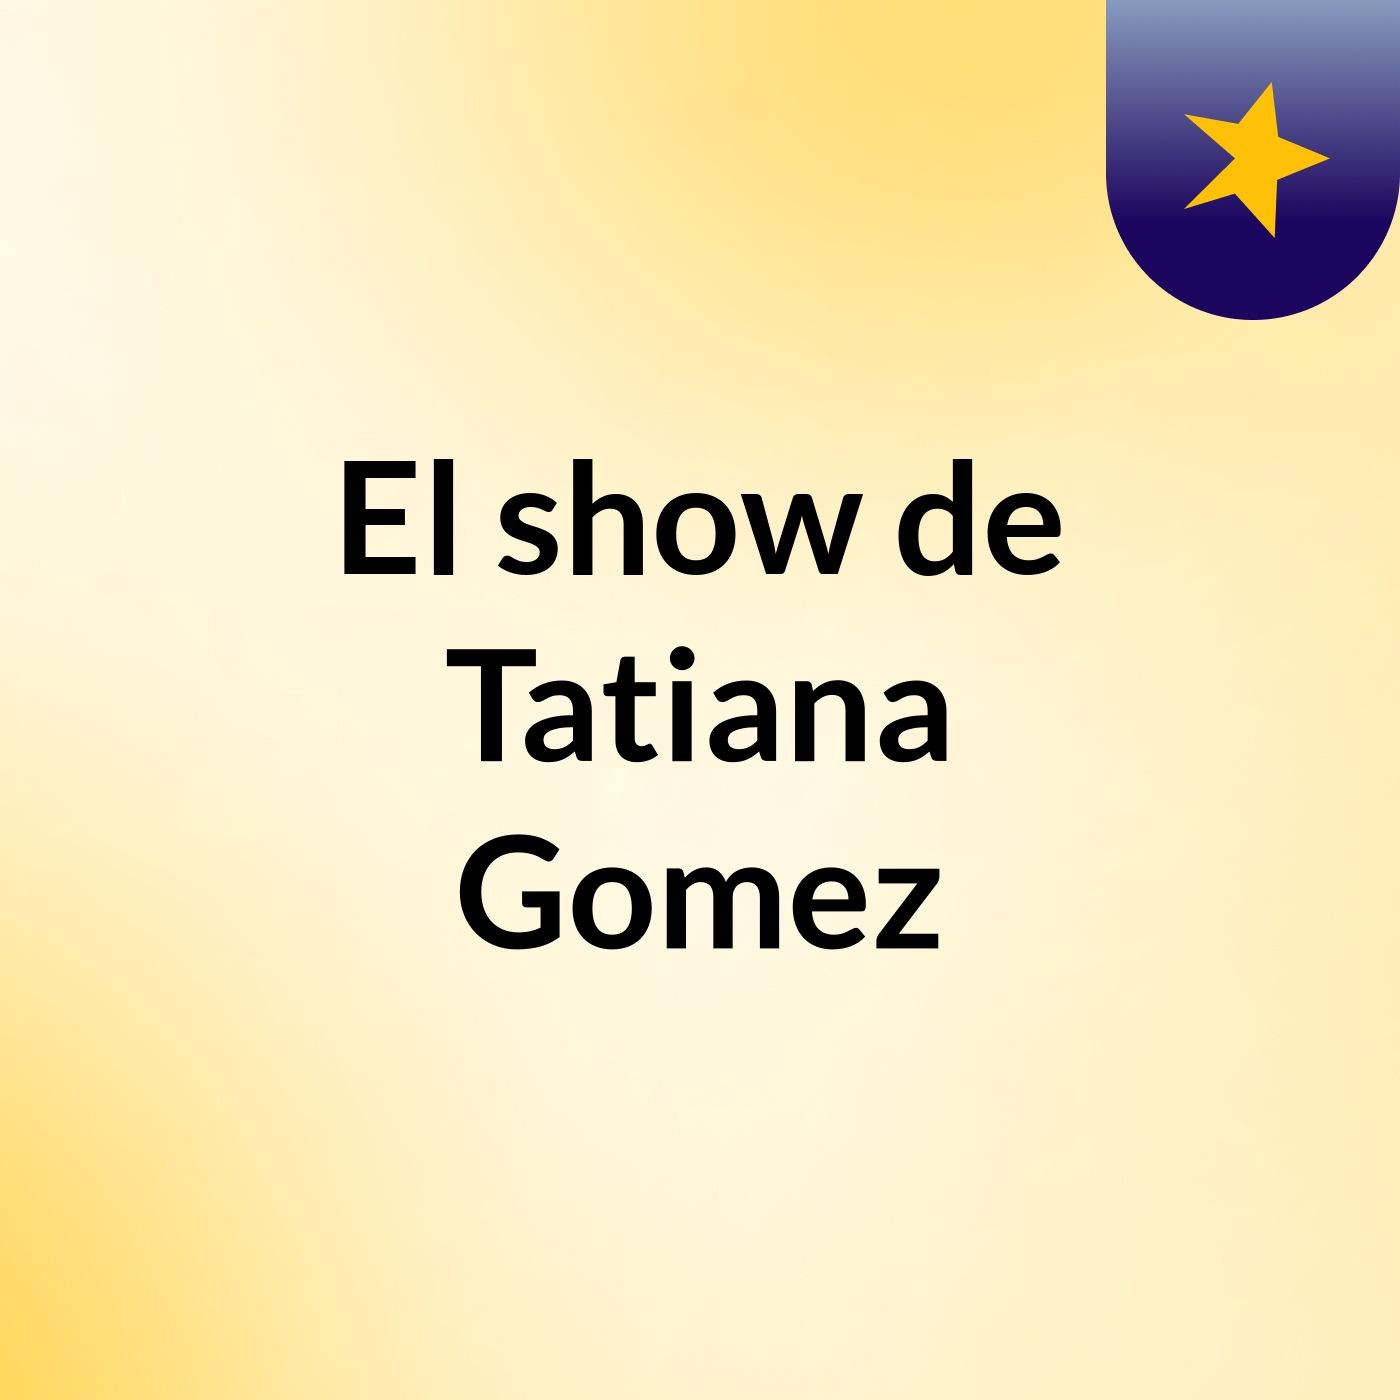 El show de Tatiana Gomez